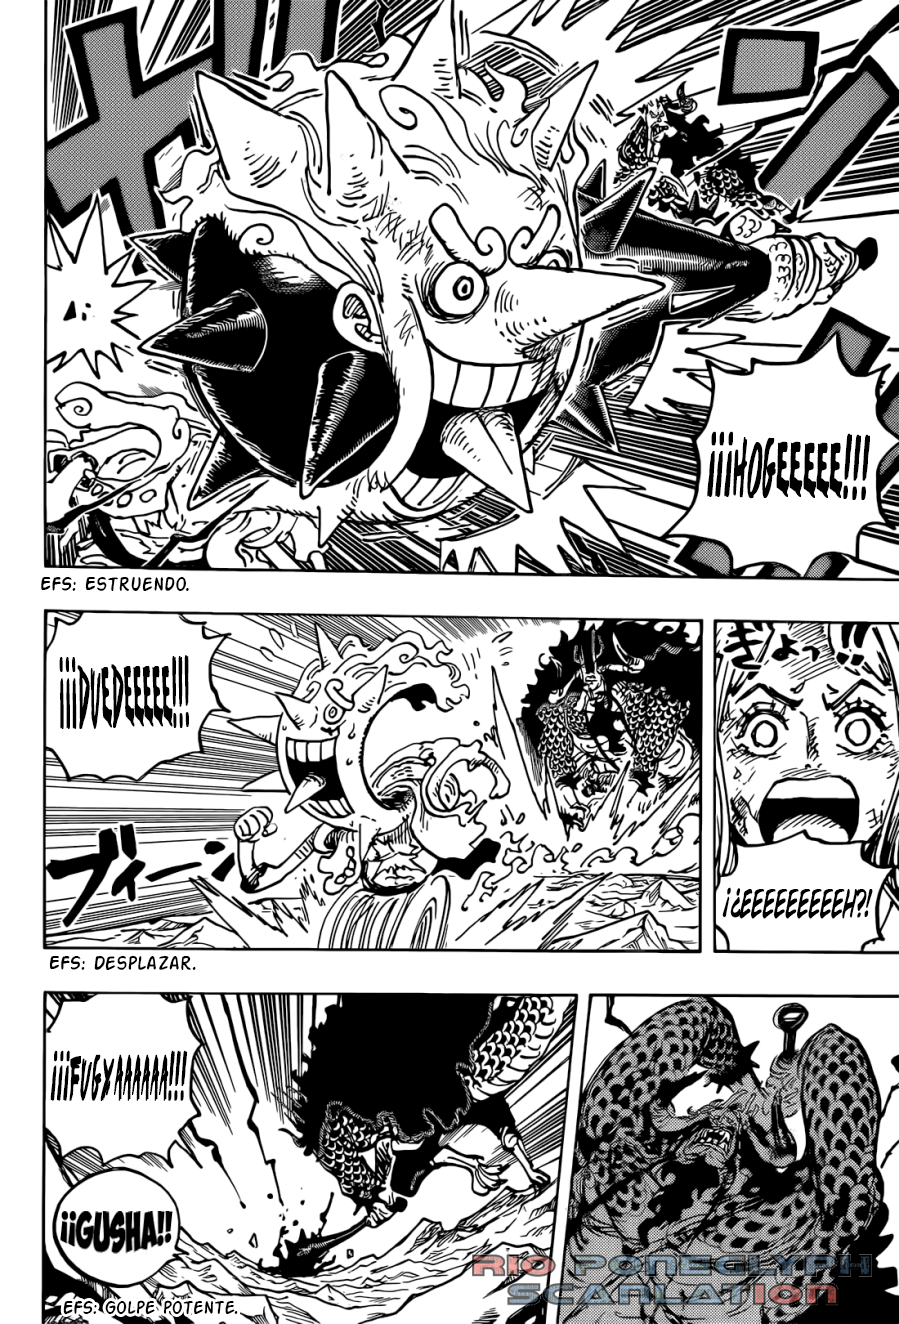 1026 - One Piece Manga 1045 [Español] [Rio Poneglyph Scans] TENGWhpT_o